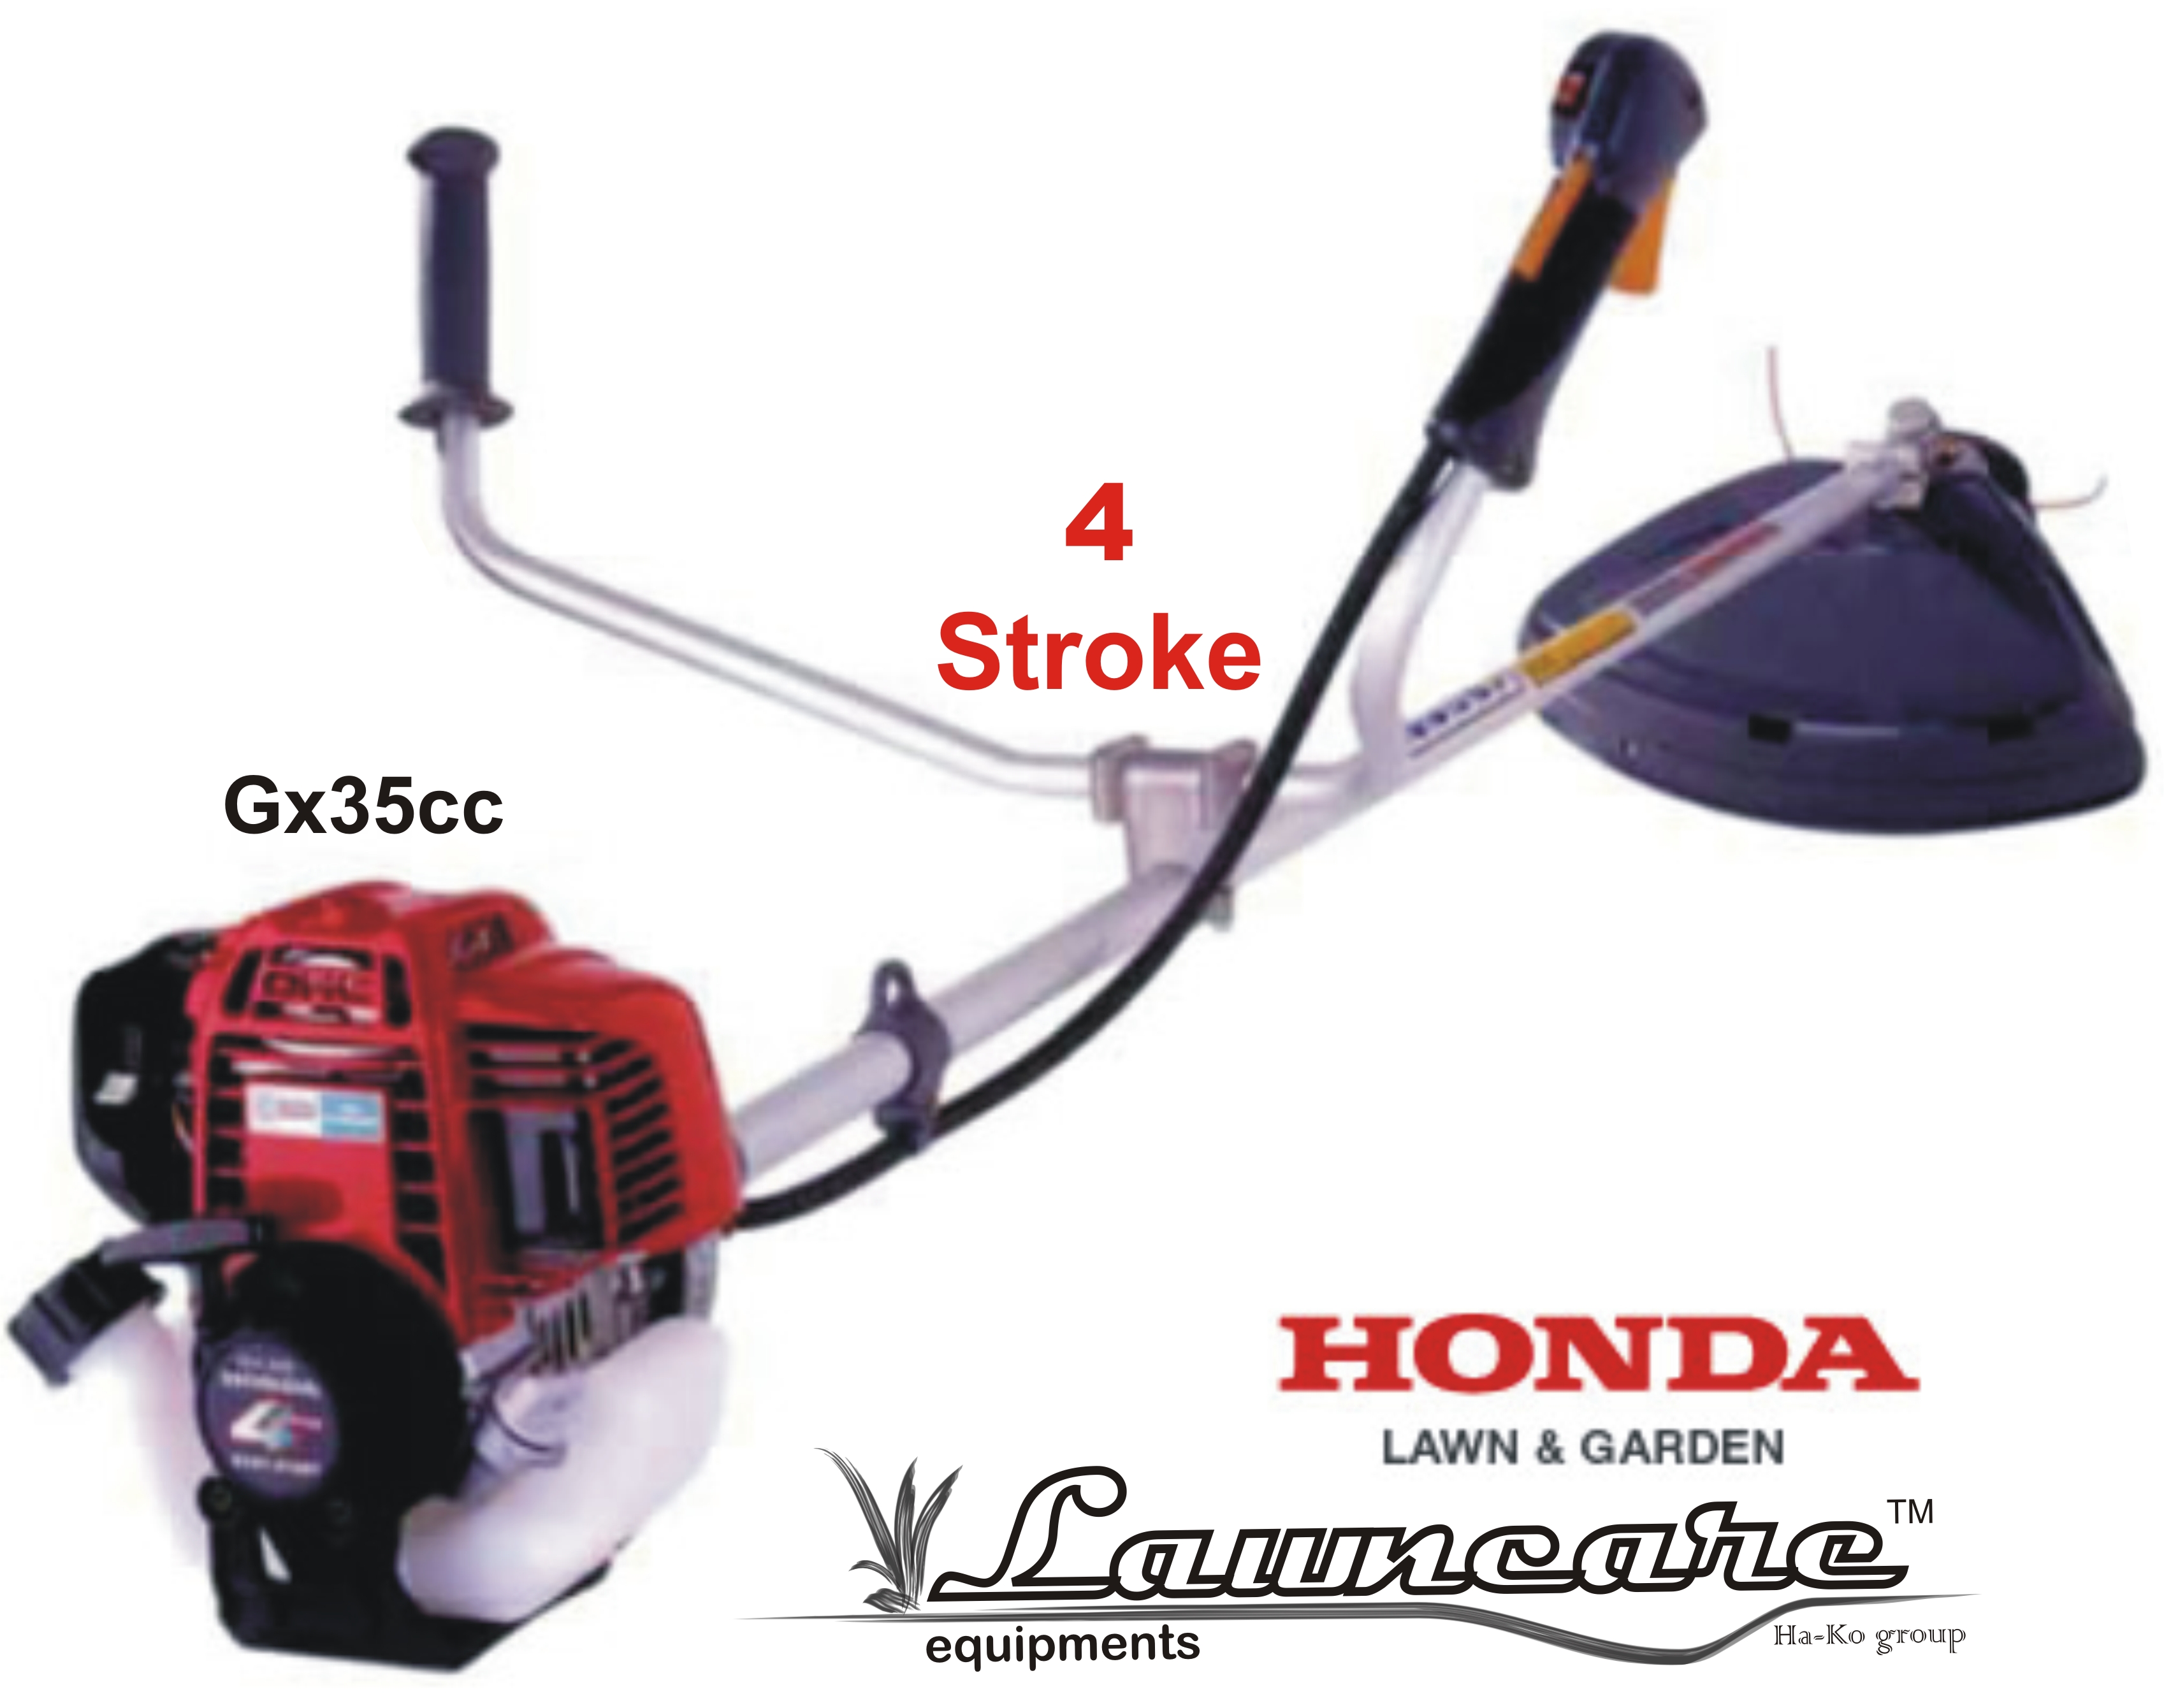 Honda brush cutter price list india